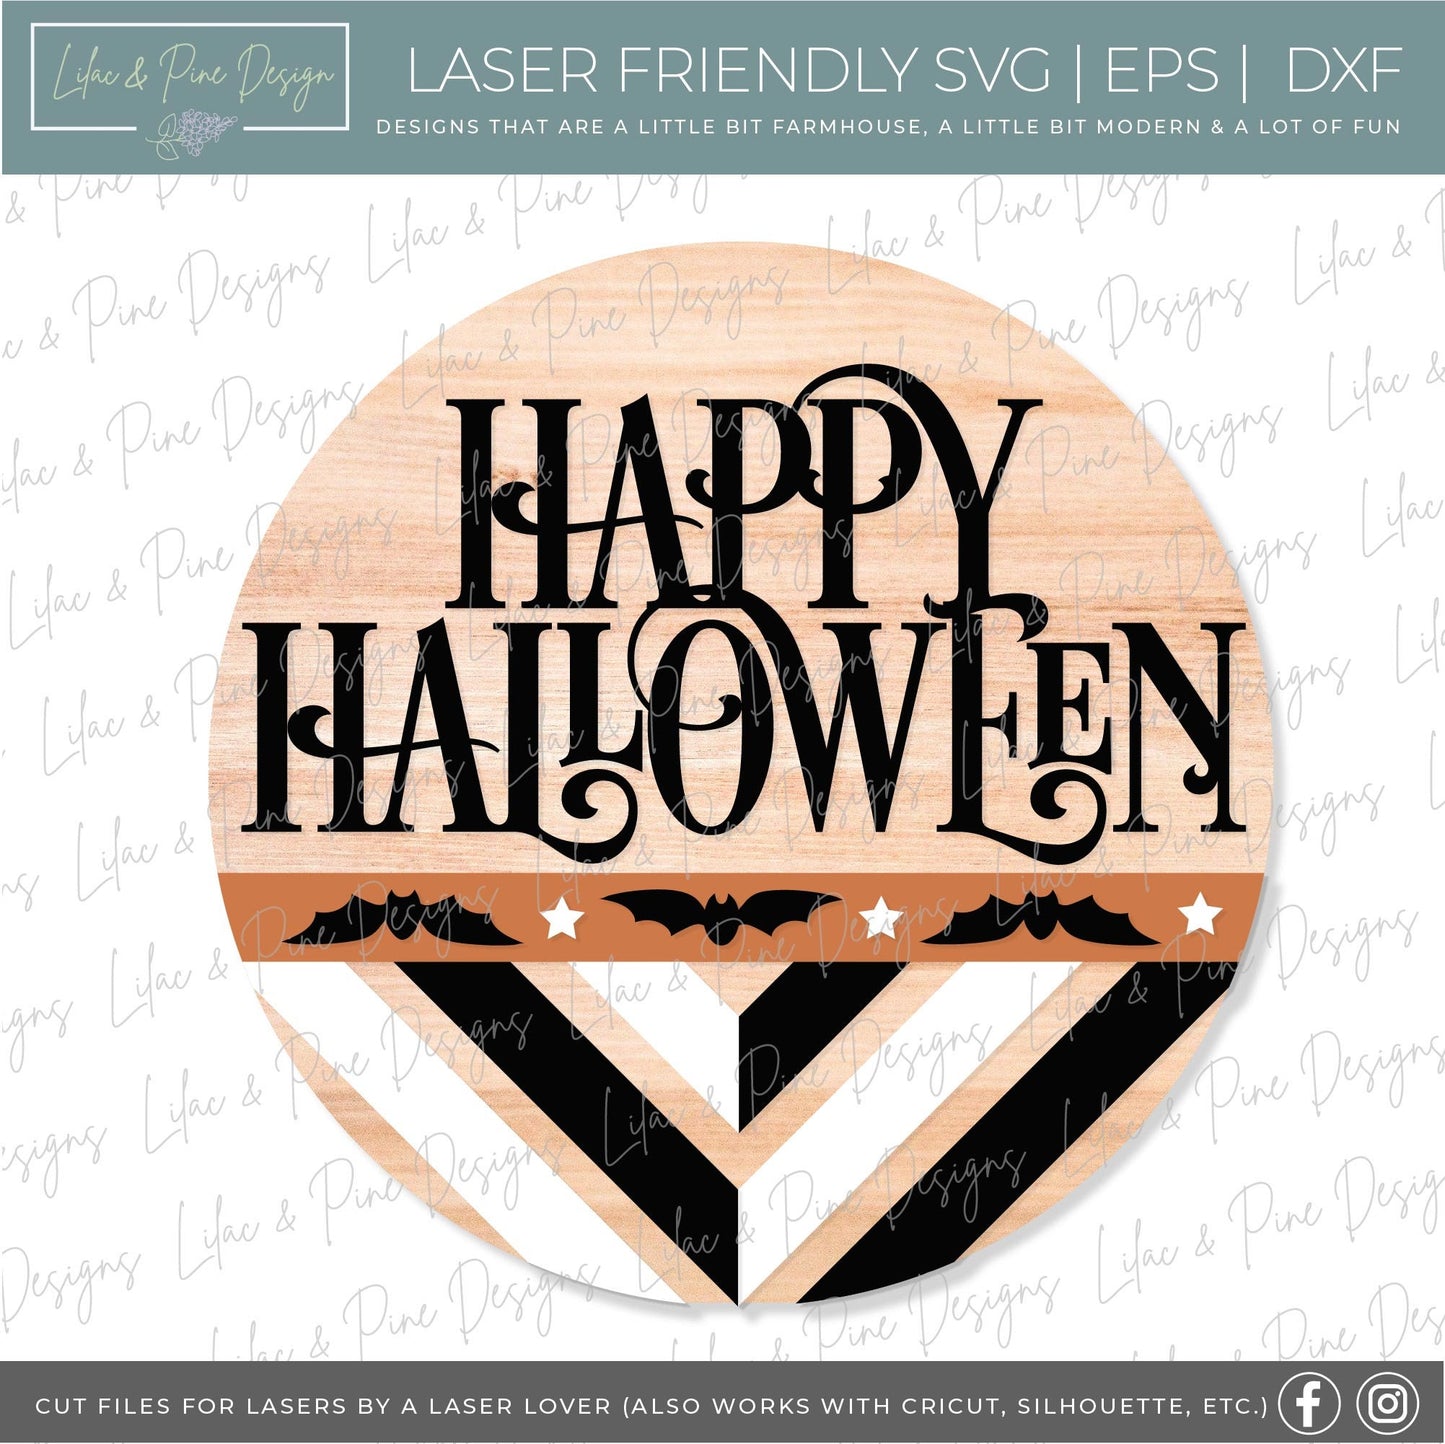 Happy Halloween door hanger SVG, Boho bat door hanger, Boho welcome sign SVG, Halloween welcome sign, Halloween decor, Glowforge laser SVG